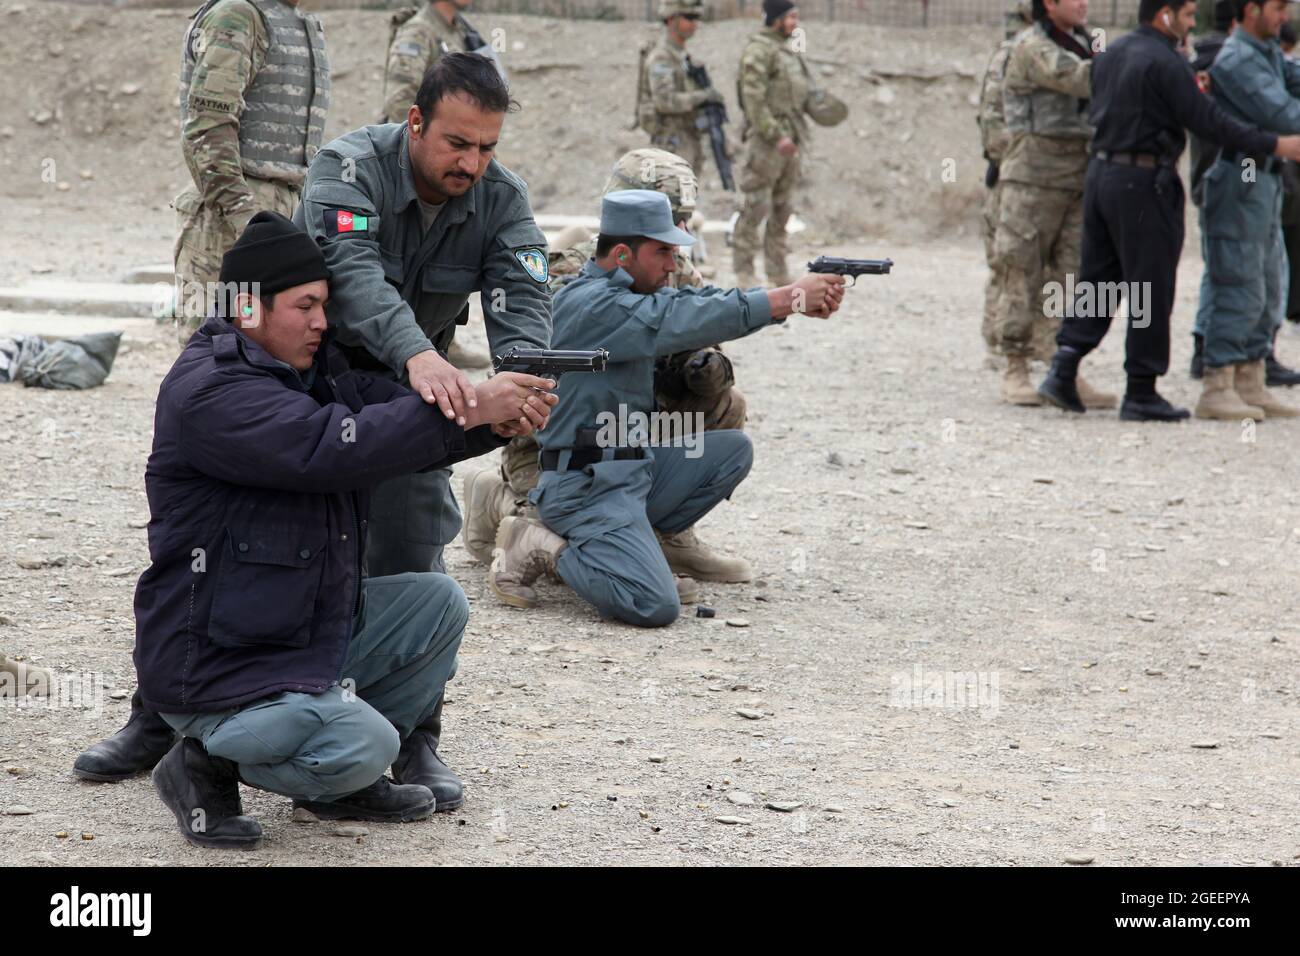 Die in der Stadt Khost stationierten, uniformierten afghanischen Polizisten helfen sich gegenseitig, ihre Fähigkeiten zu verbessern, während sie M-9 Beretta-Pistolen auf einen kleinen Waffenbereich im Camp Parsa, Provinz Khowst, Afghanistan, abfeuern, 30. Januar 2013. Soldaten der US-Armee, die dem Team 28 der Sicherheitskräfte, der Task Force 3/101, zugewiesen wurden, planten die Reichweite und unterstützten die AUP beim sicheren Üben mit ihren Waffen. (USA Armeefoto von Sgt. Kimberly Trumbull / Veröffentlicht) Stockfoto